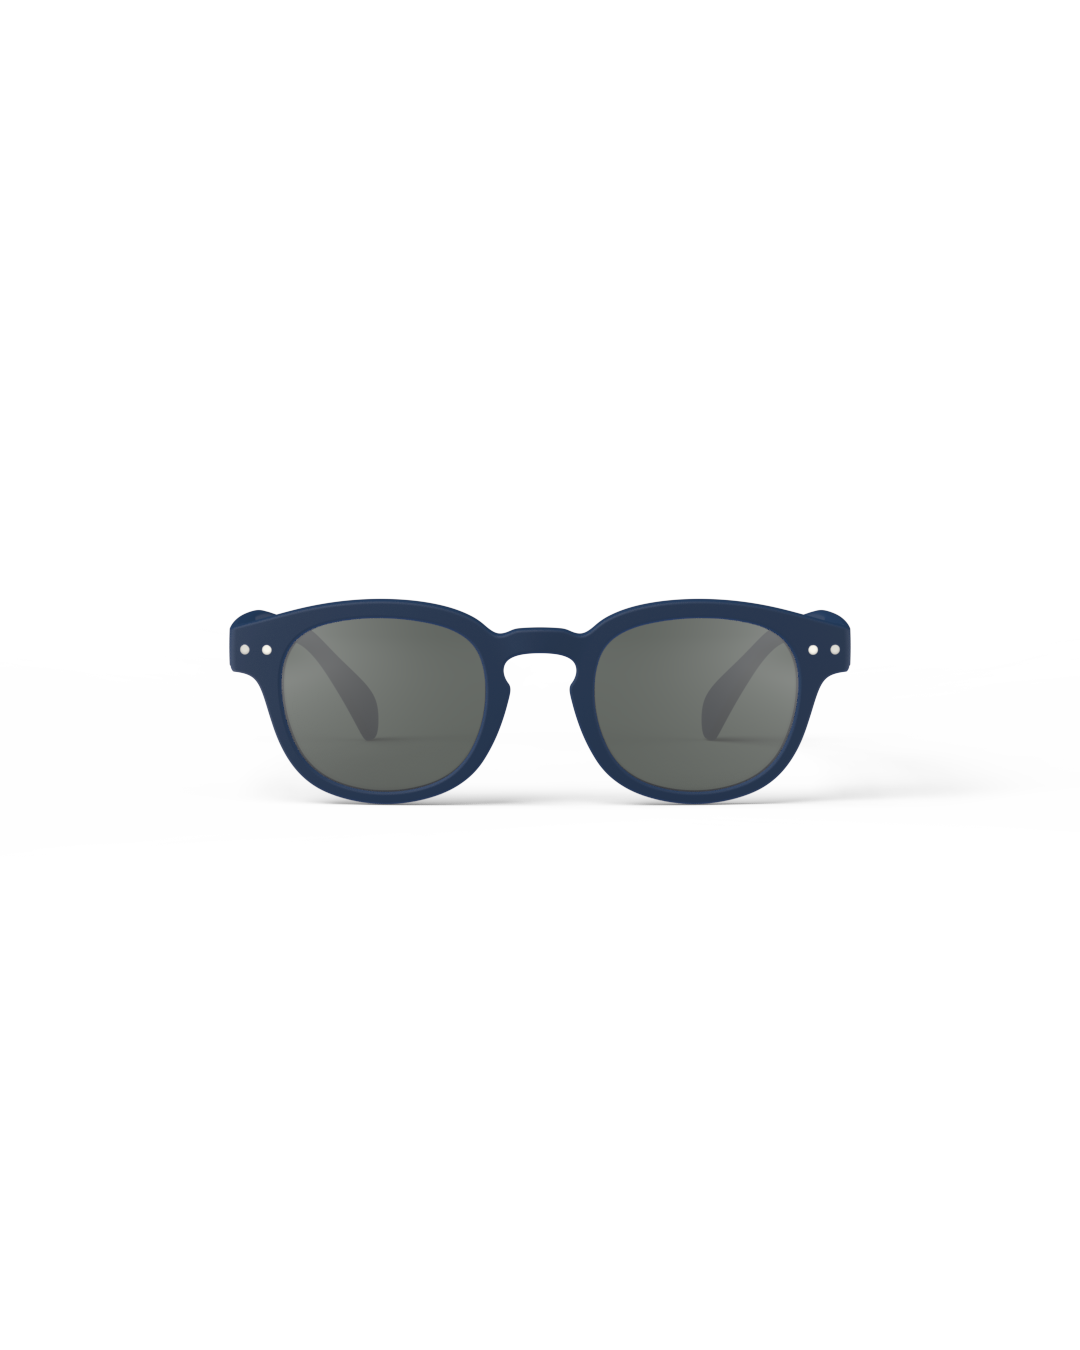 Izipizi Sunglasses Junior | C Navy Blue Grey Lenses 5-10Y